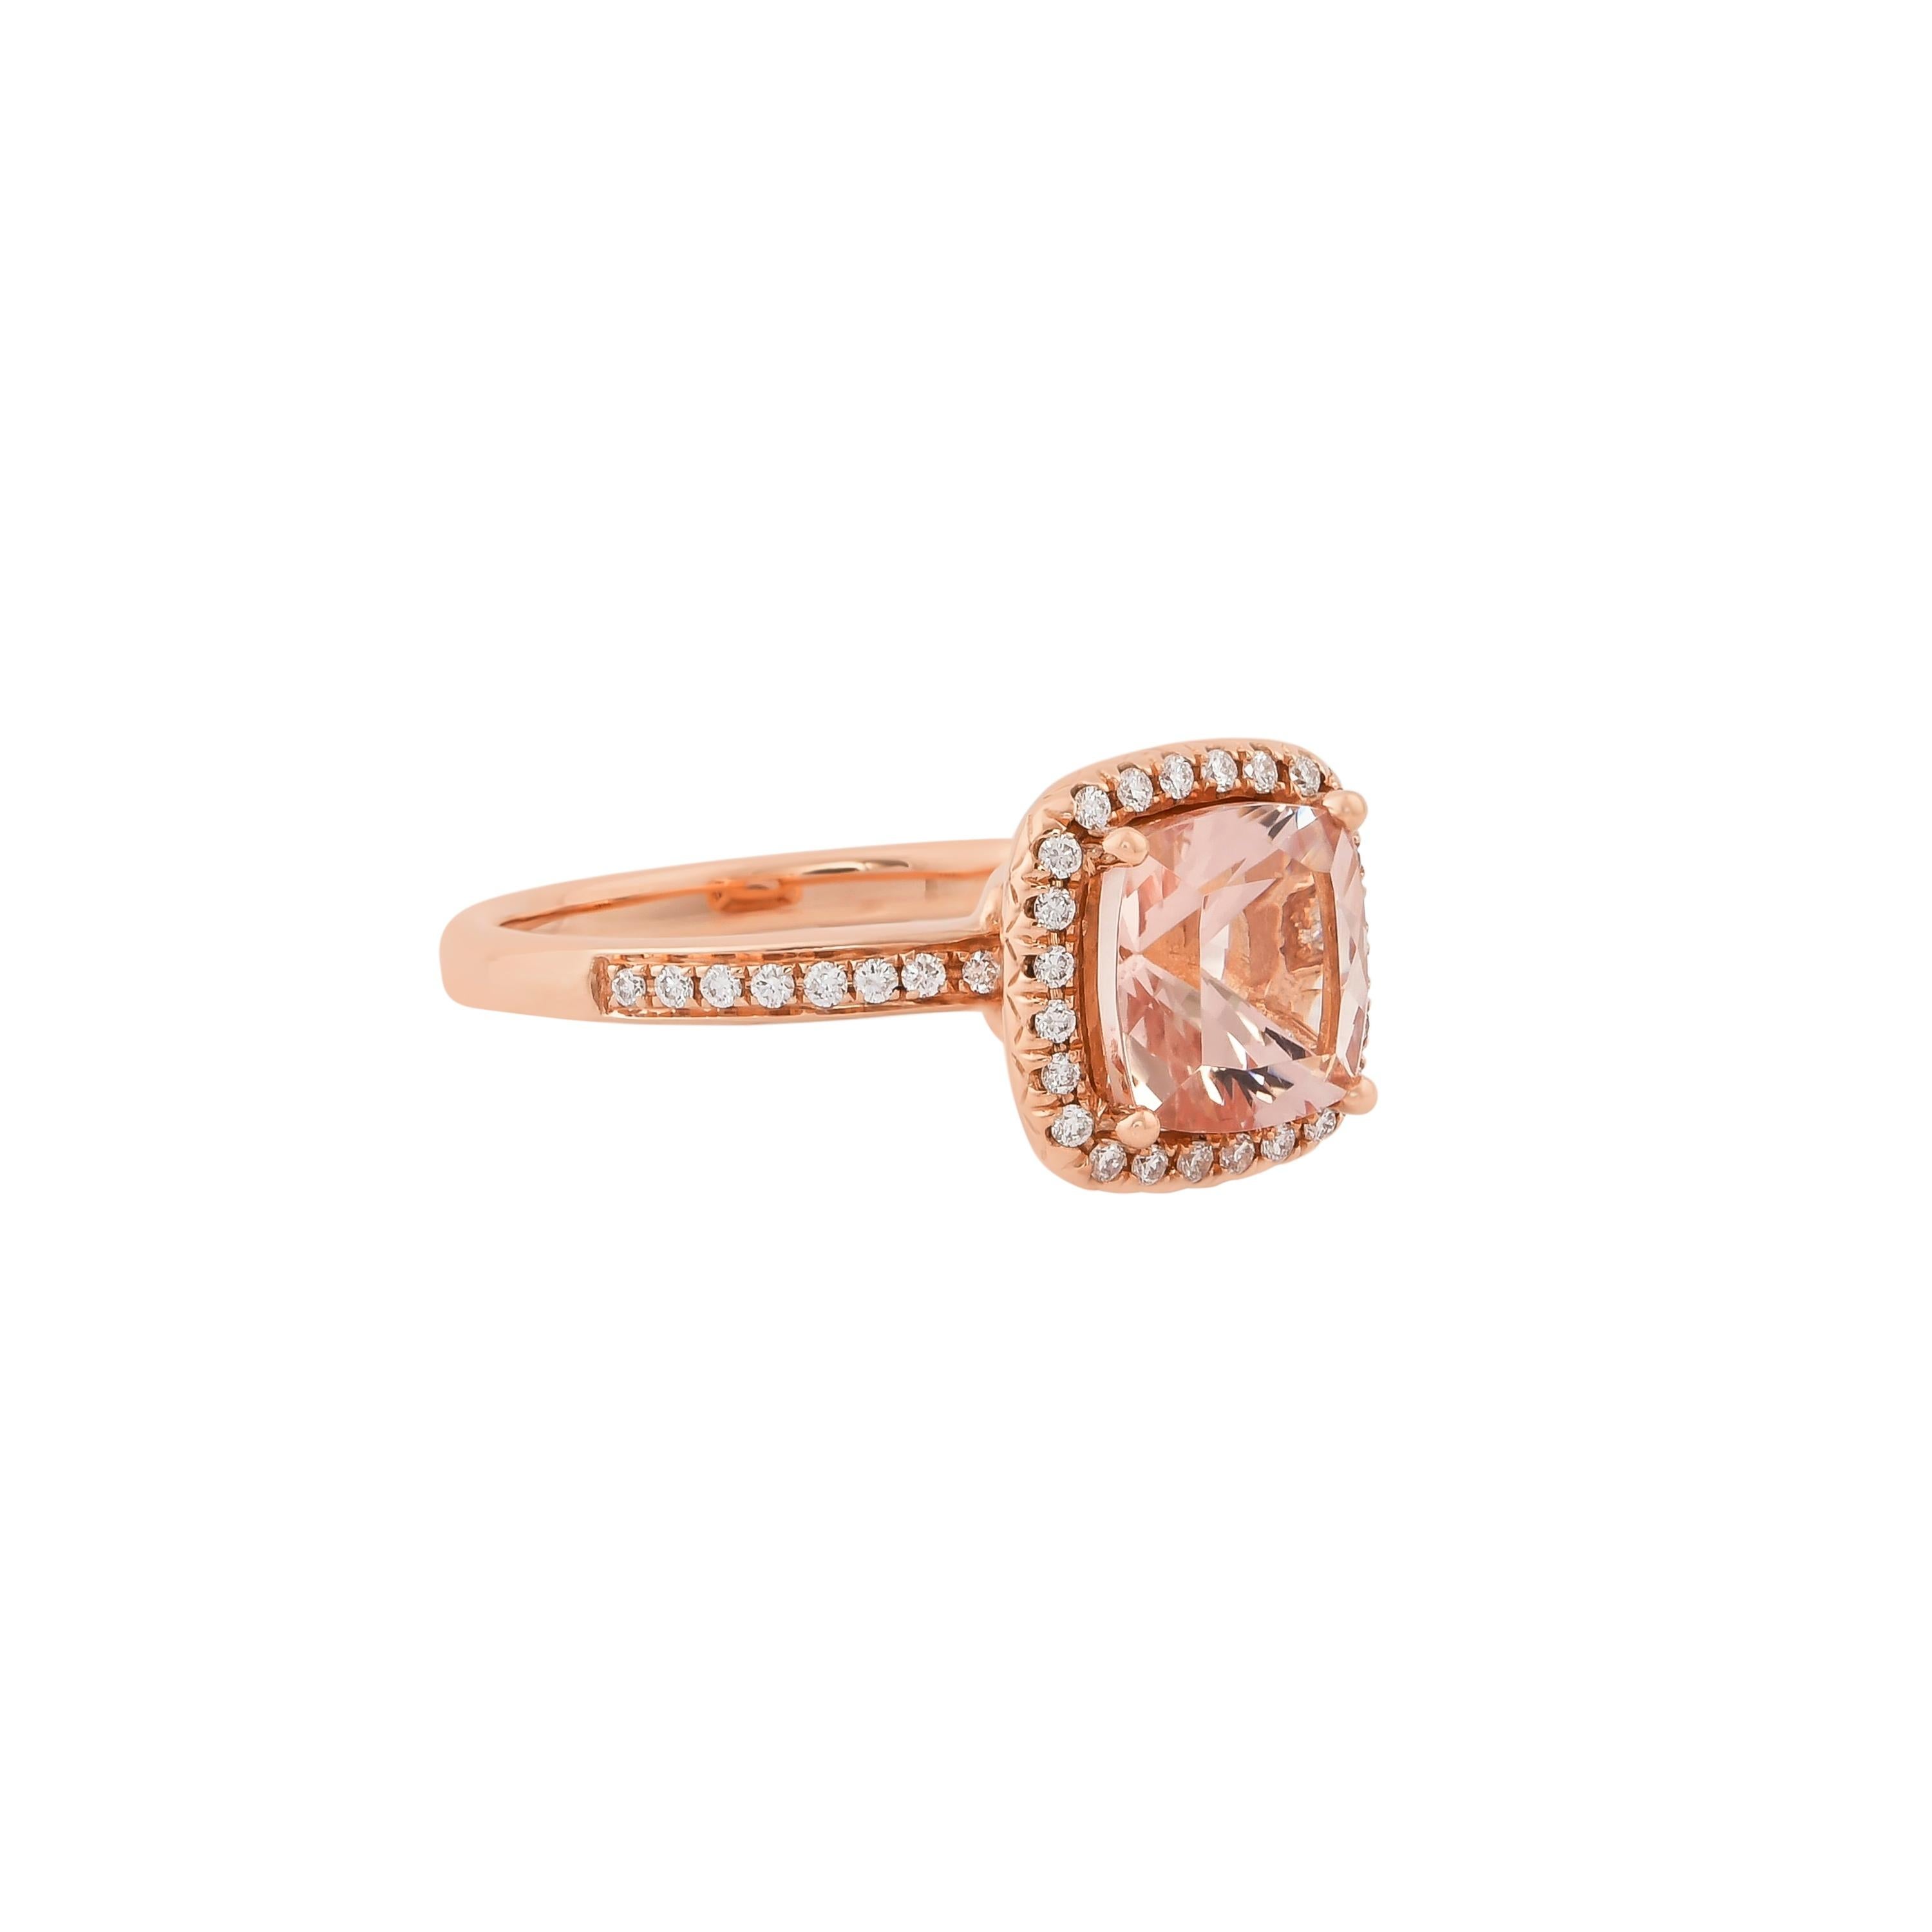 Diese Kollektion bietet eine Reihe von prächtigen Morganiten! Diese mit Diamanten besetzten Ringe sind aus Roségold gefertigt und wirken klassisch und elegant. 

Klassischer Morganit-Ring aus 18 Karat Roségold mit Diamanten. 

Morganit: 2,2 Karat in